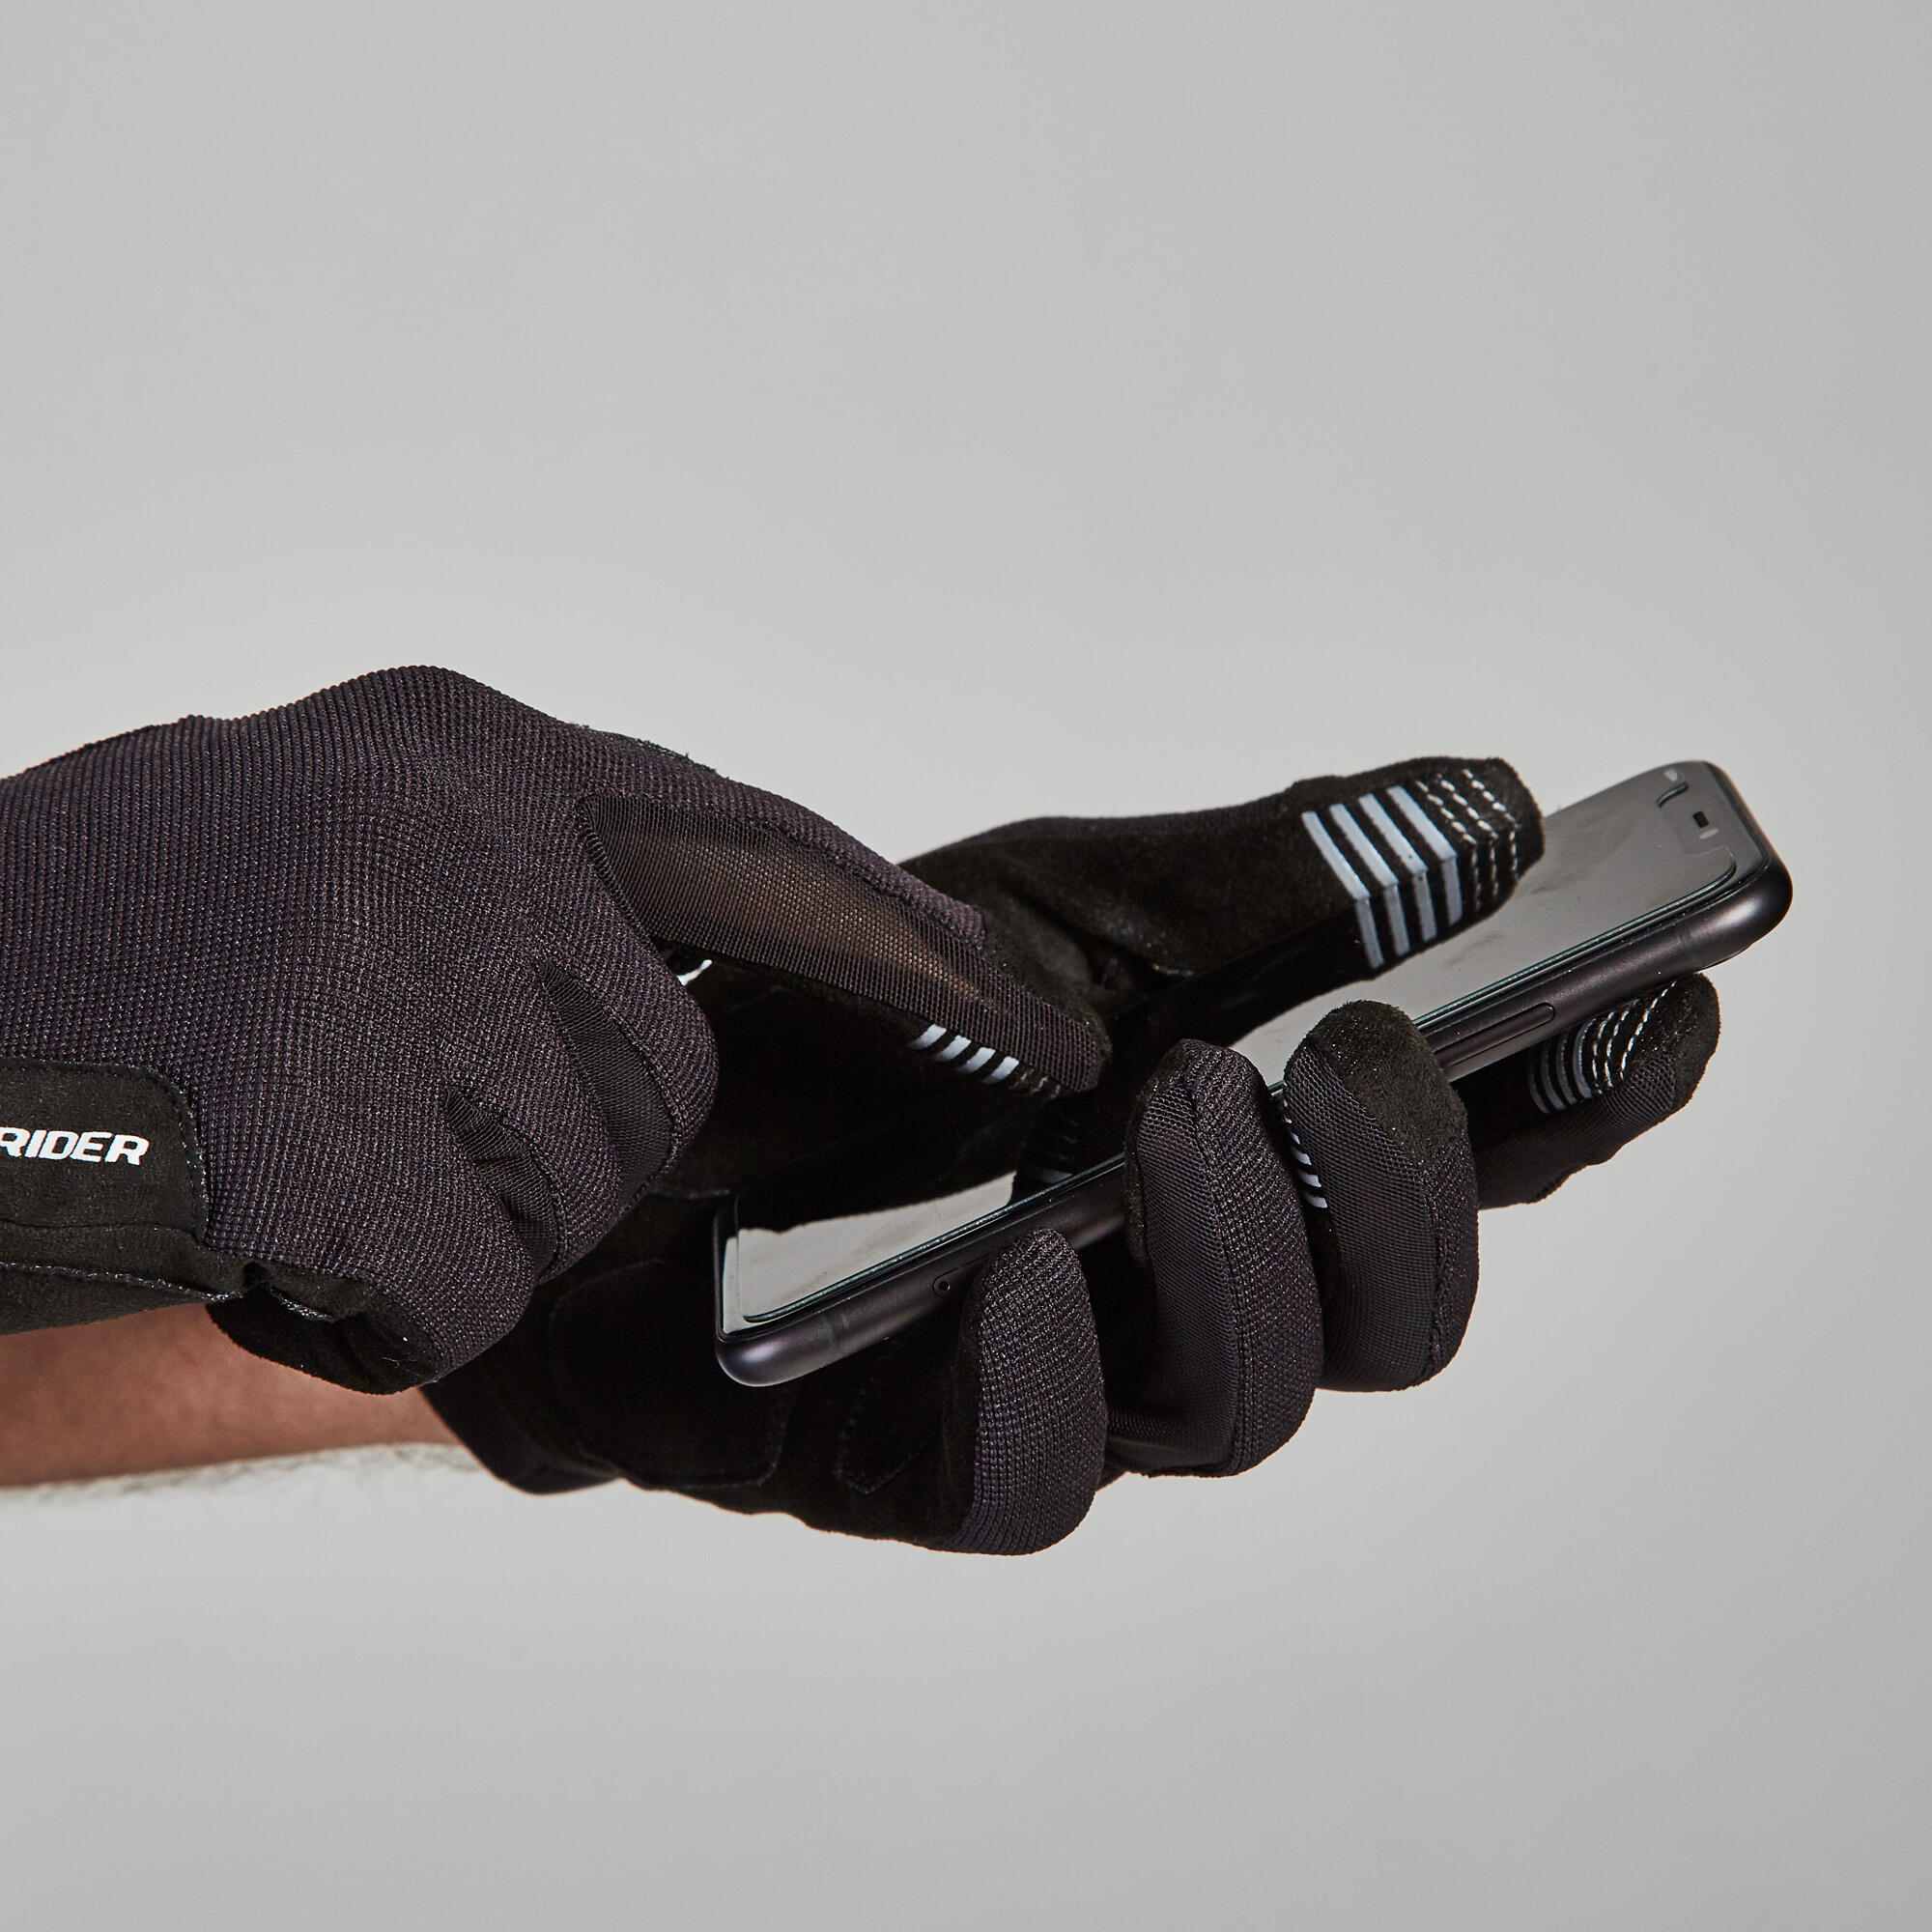 ST 100 Mountain Bike Gloves - Black 2/9